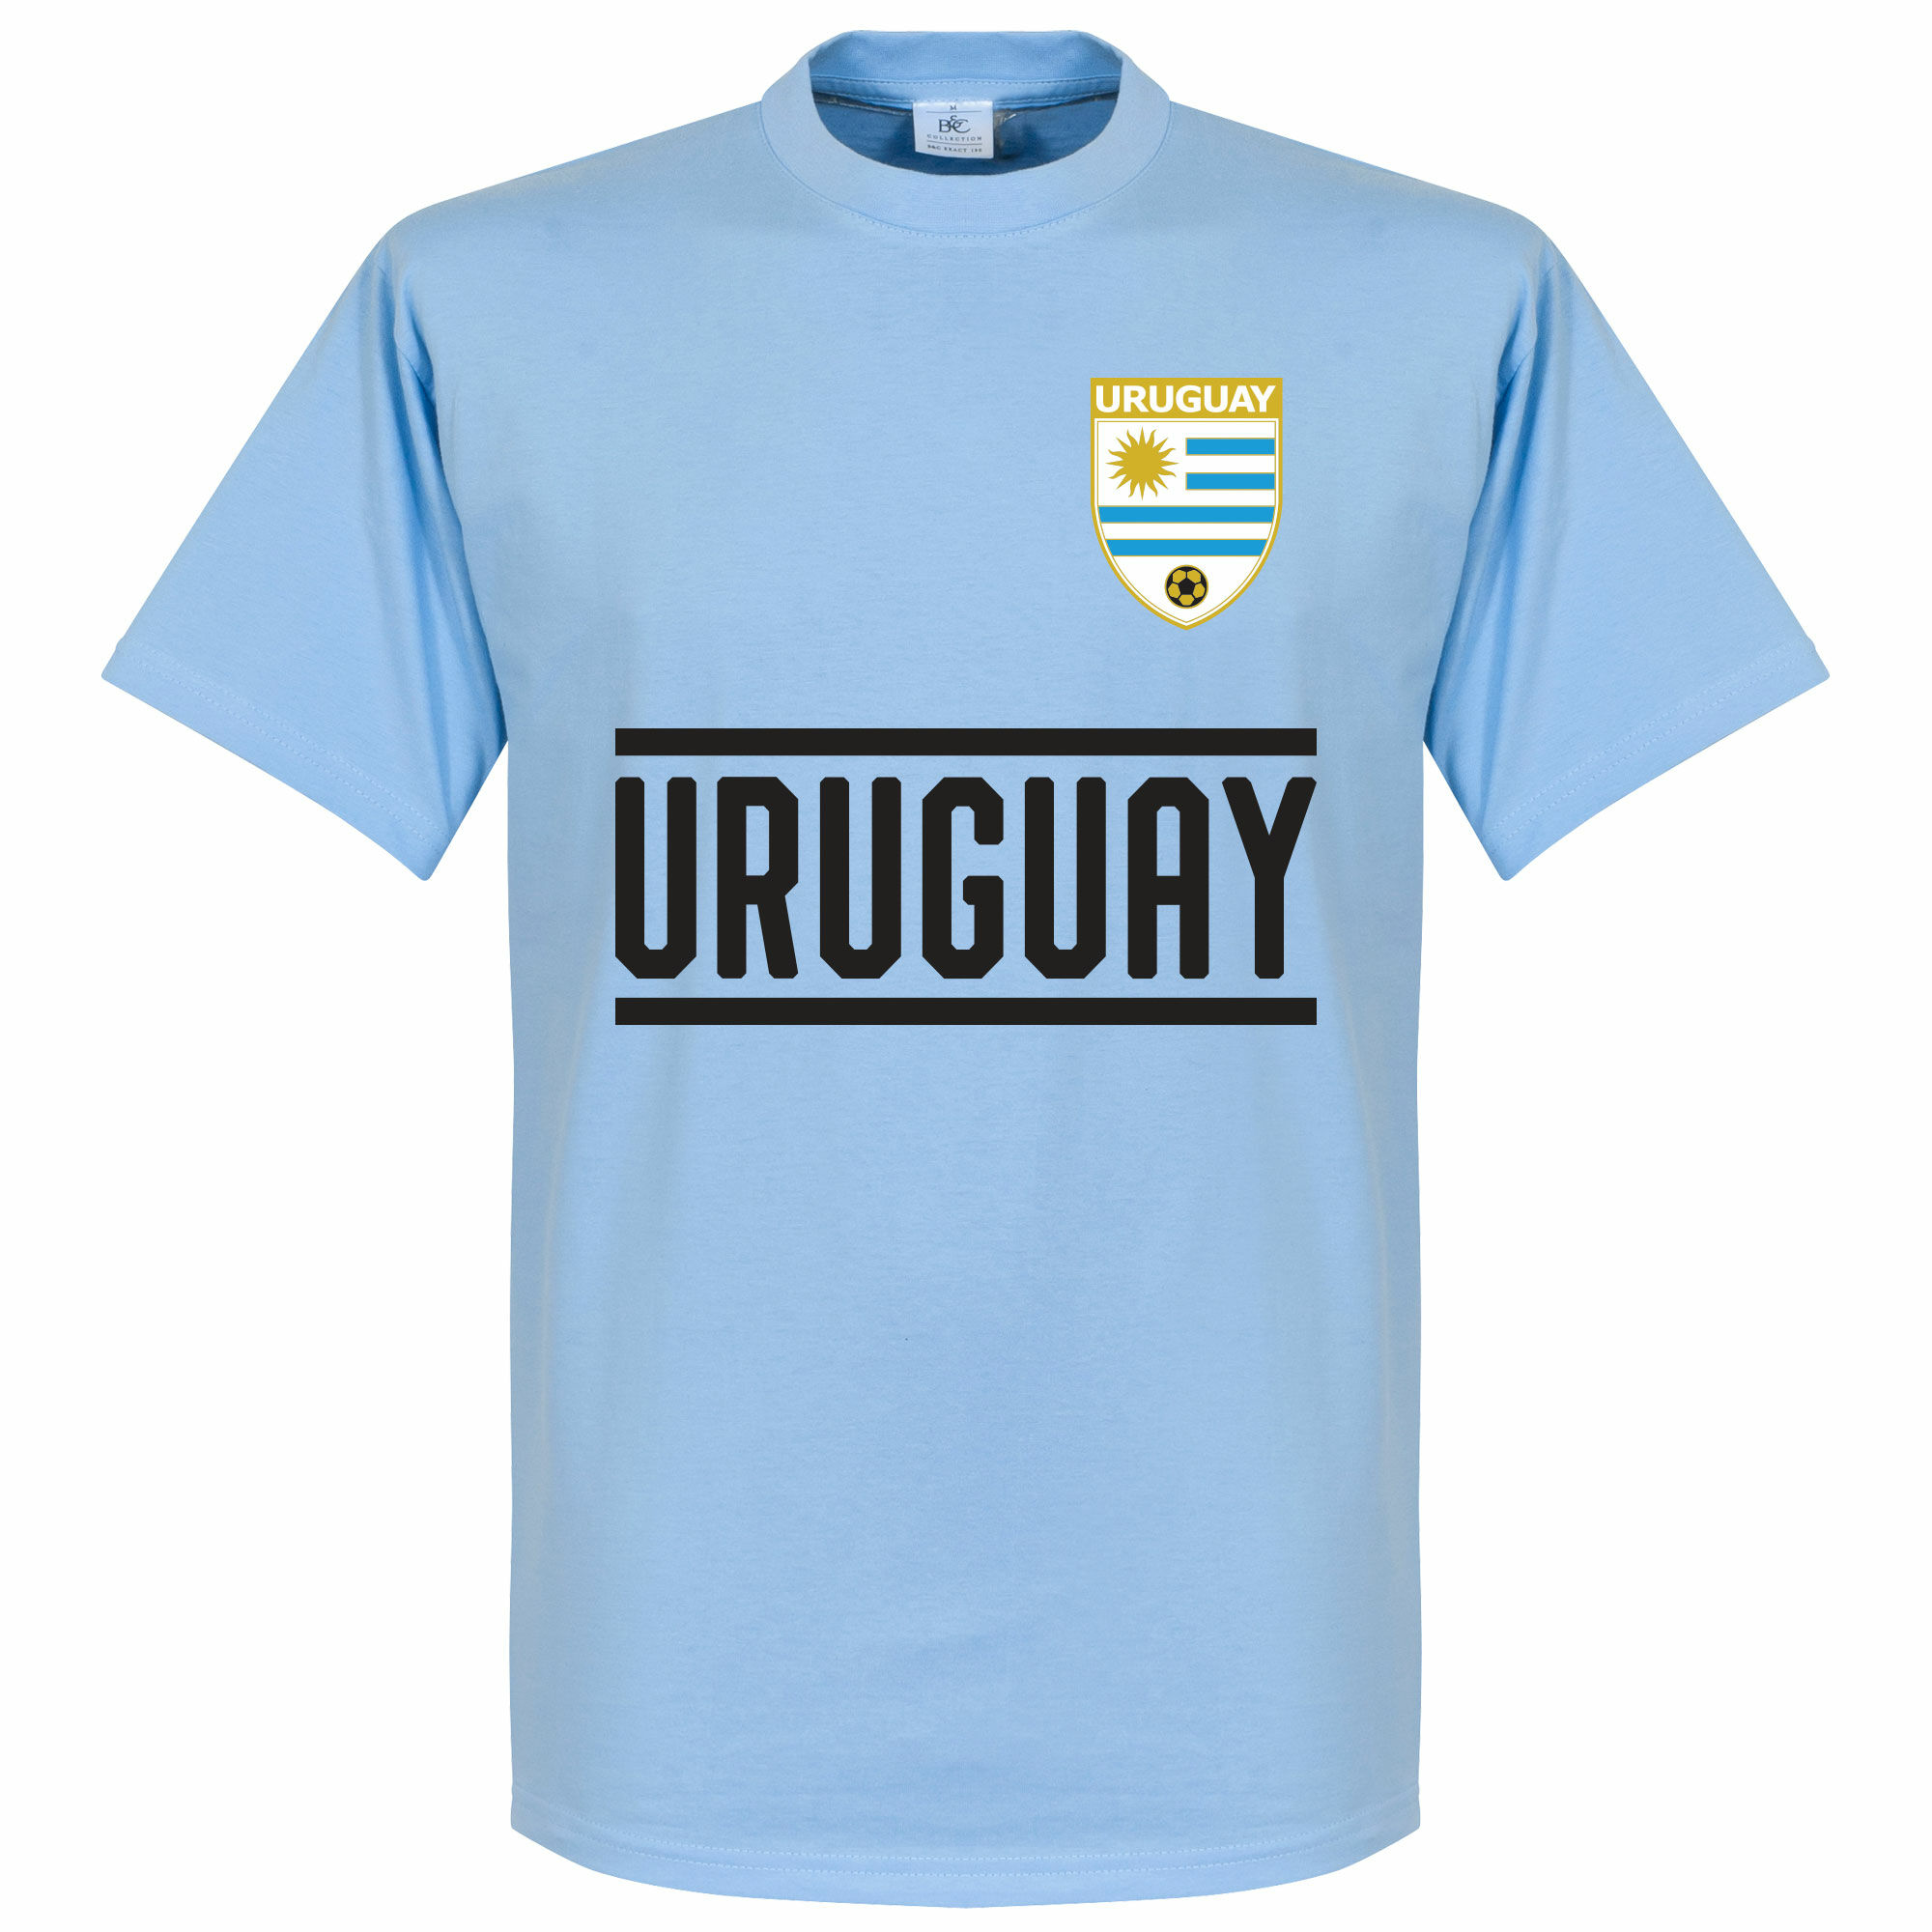 Uruguay - Tričko dětské - modré